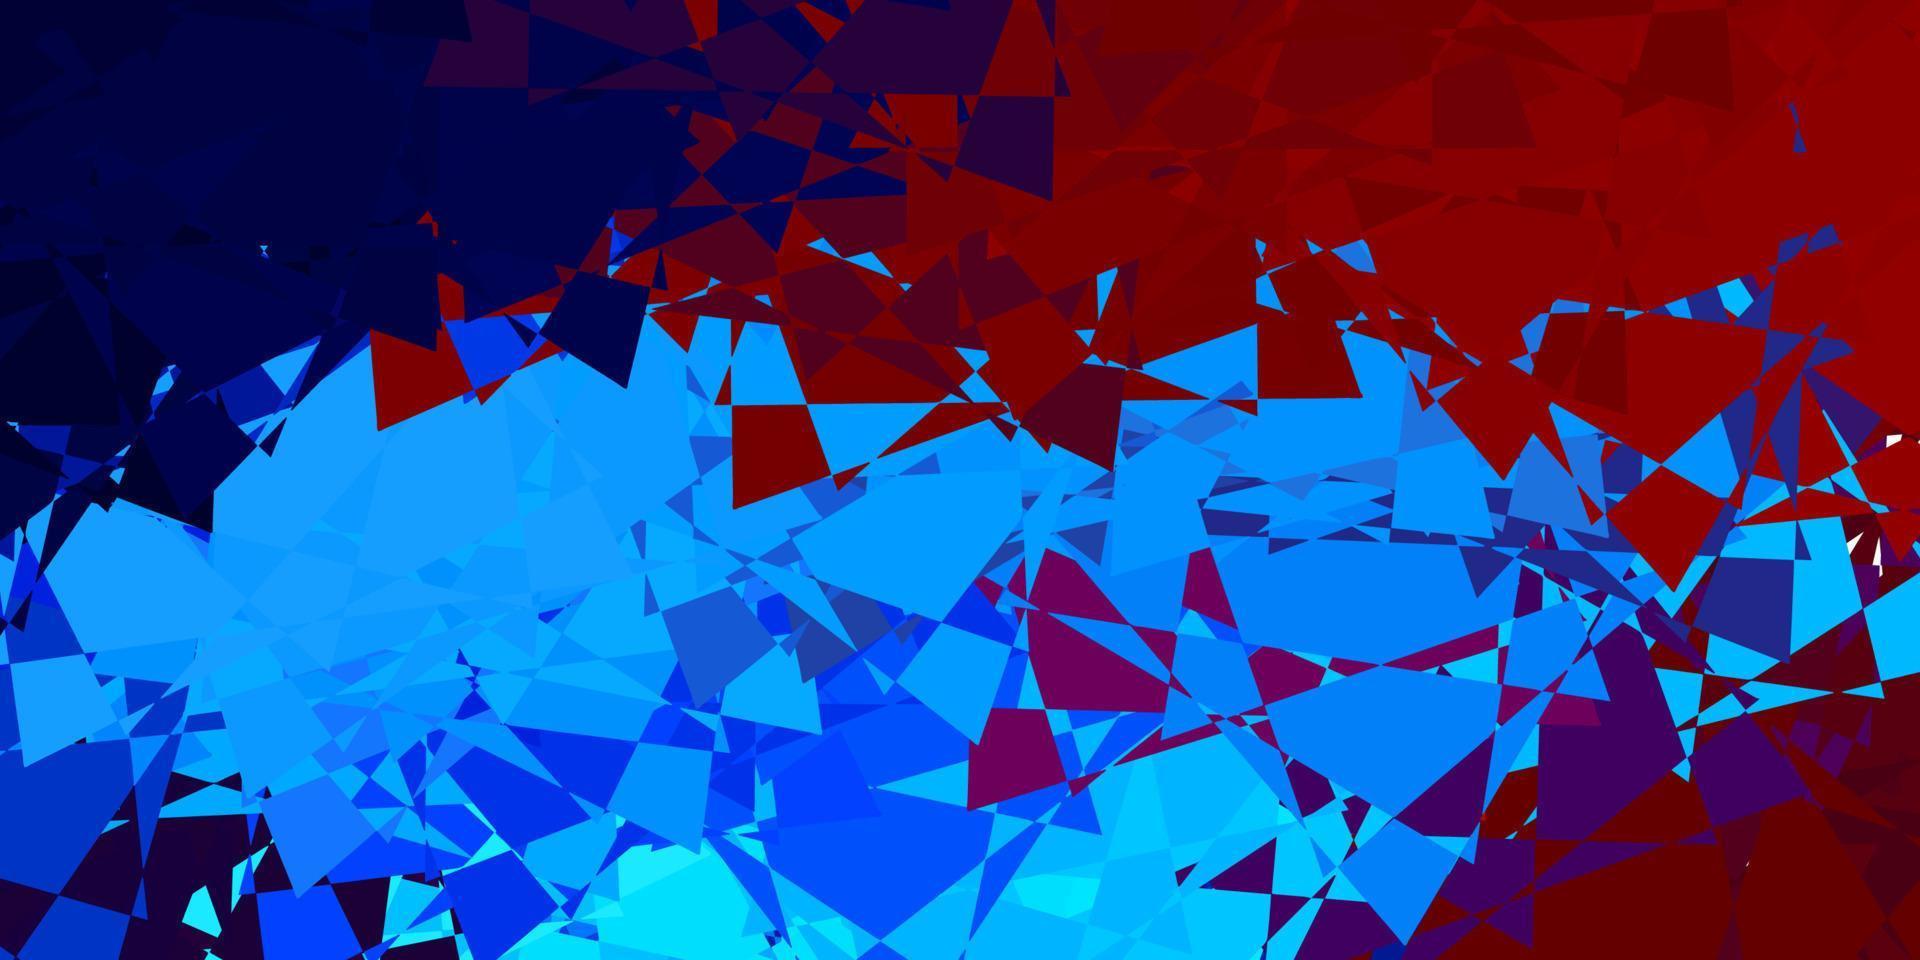 ljusblå, röd vektorlayout med triangelformer. vektor